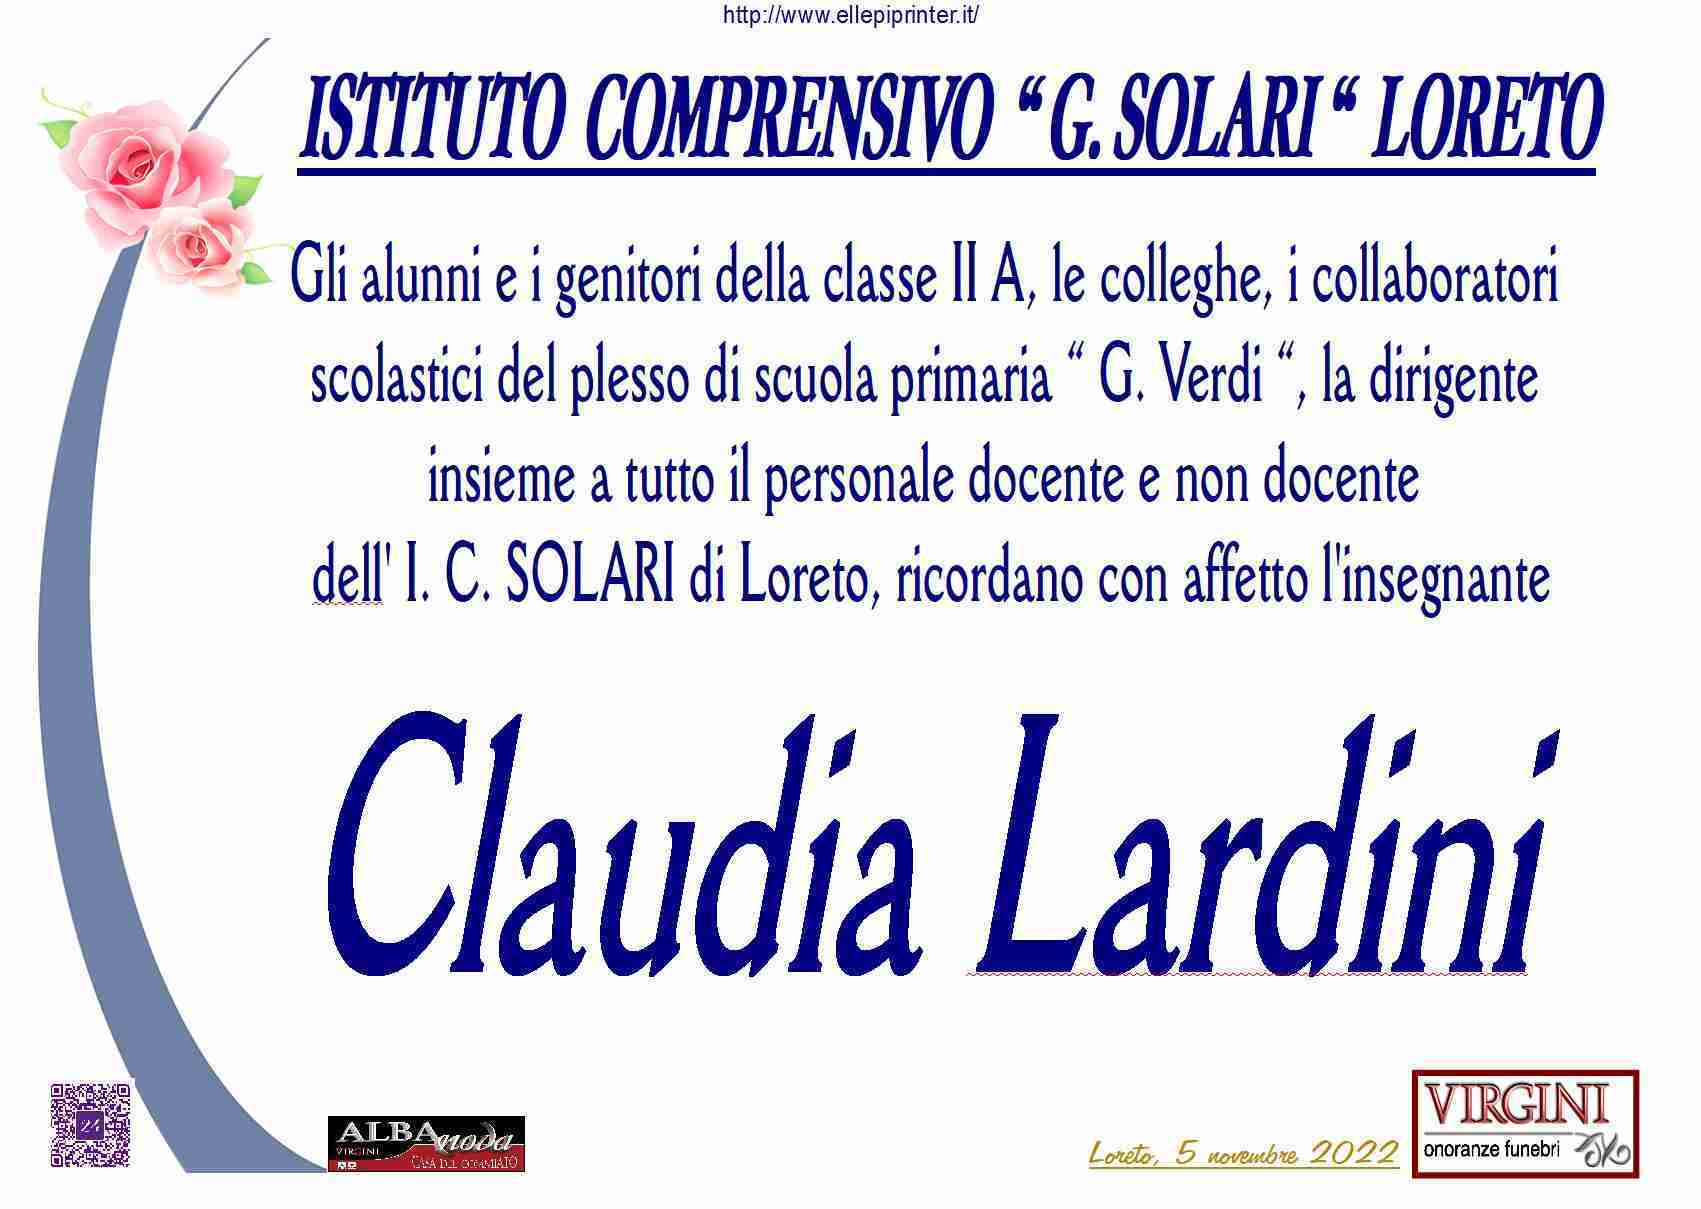 Claudia Lardini